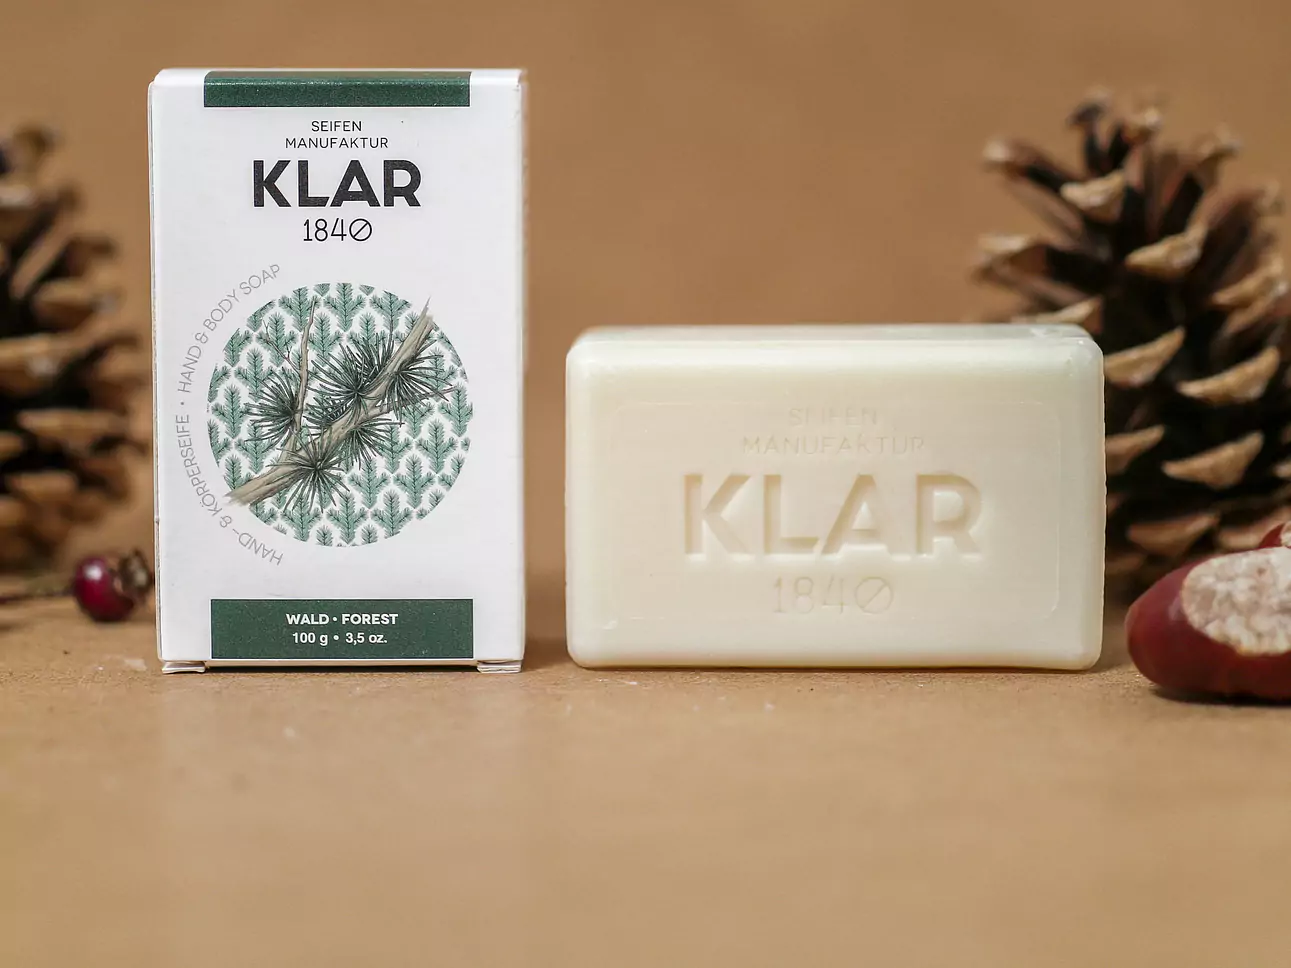 Feste Naturseifen und Shampoos von Klar Seifen (made in Germany)